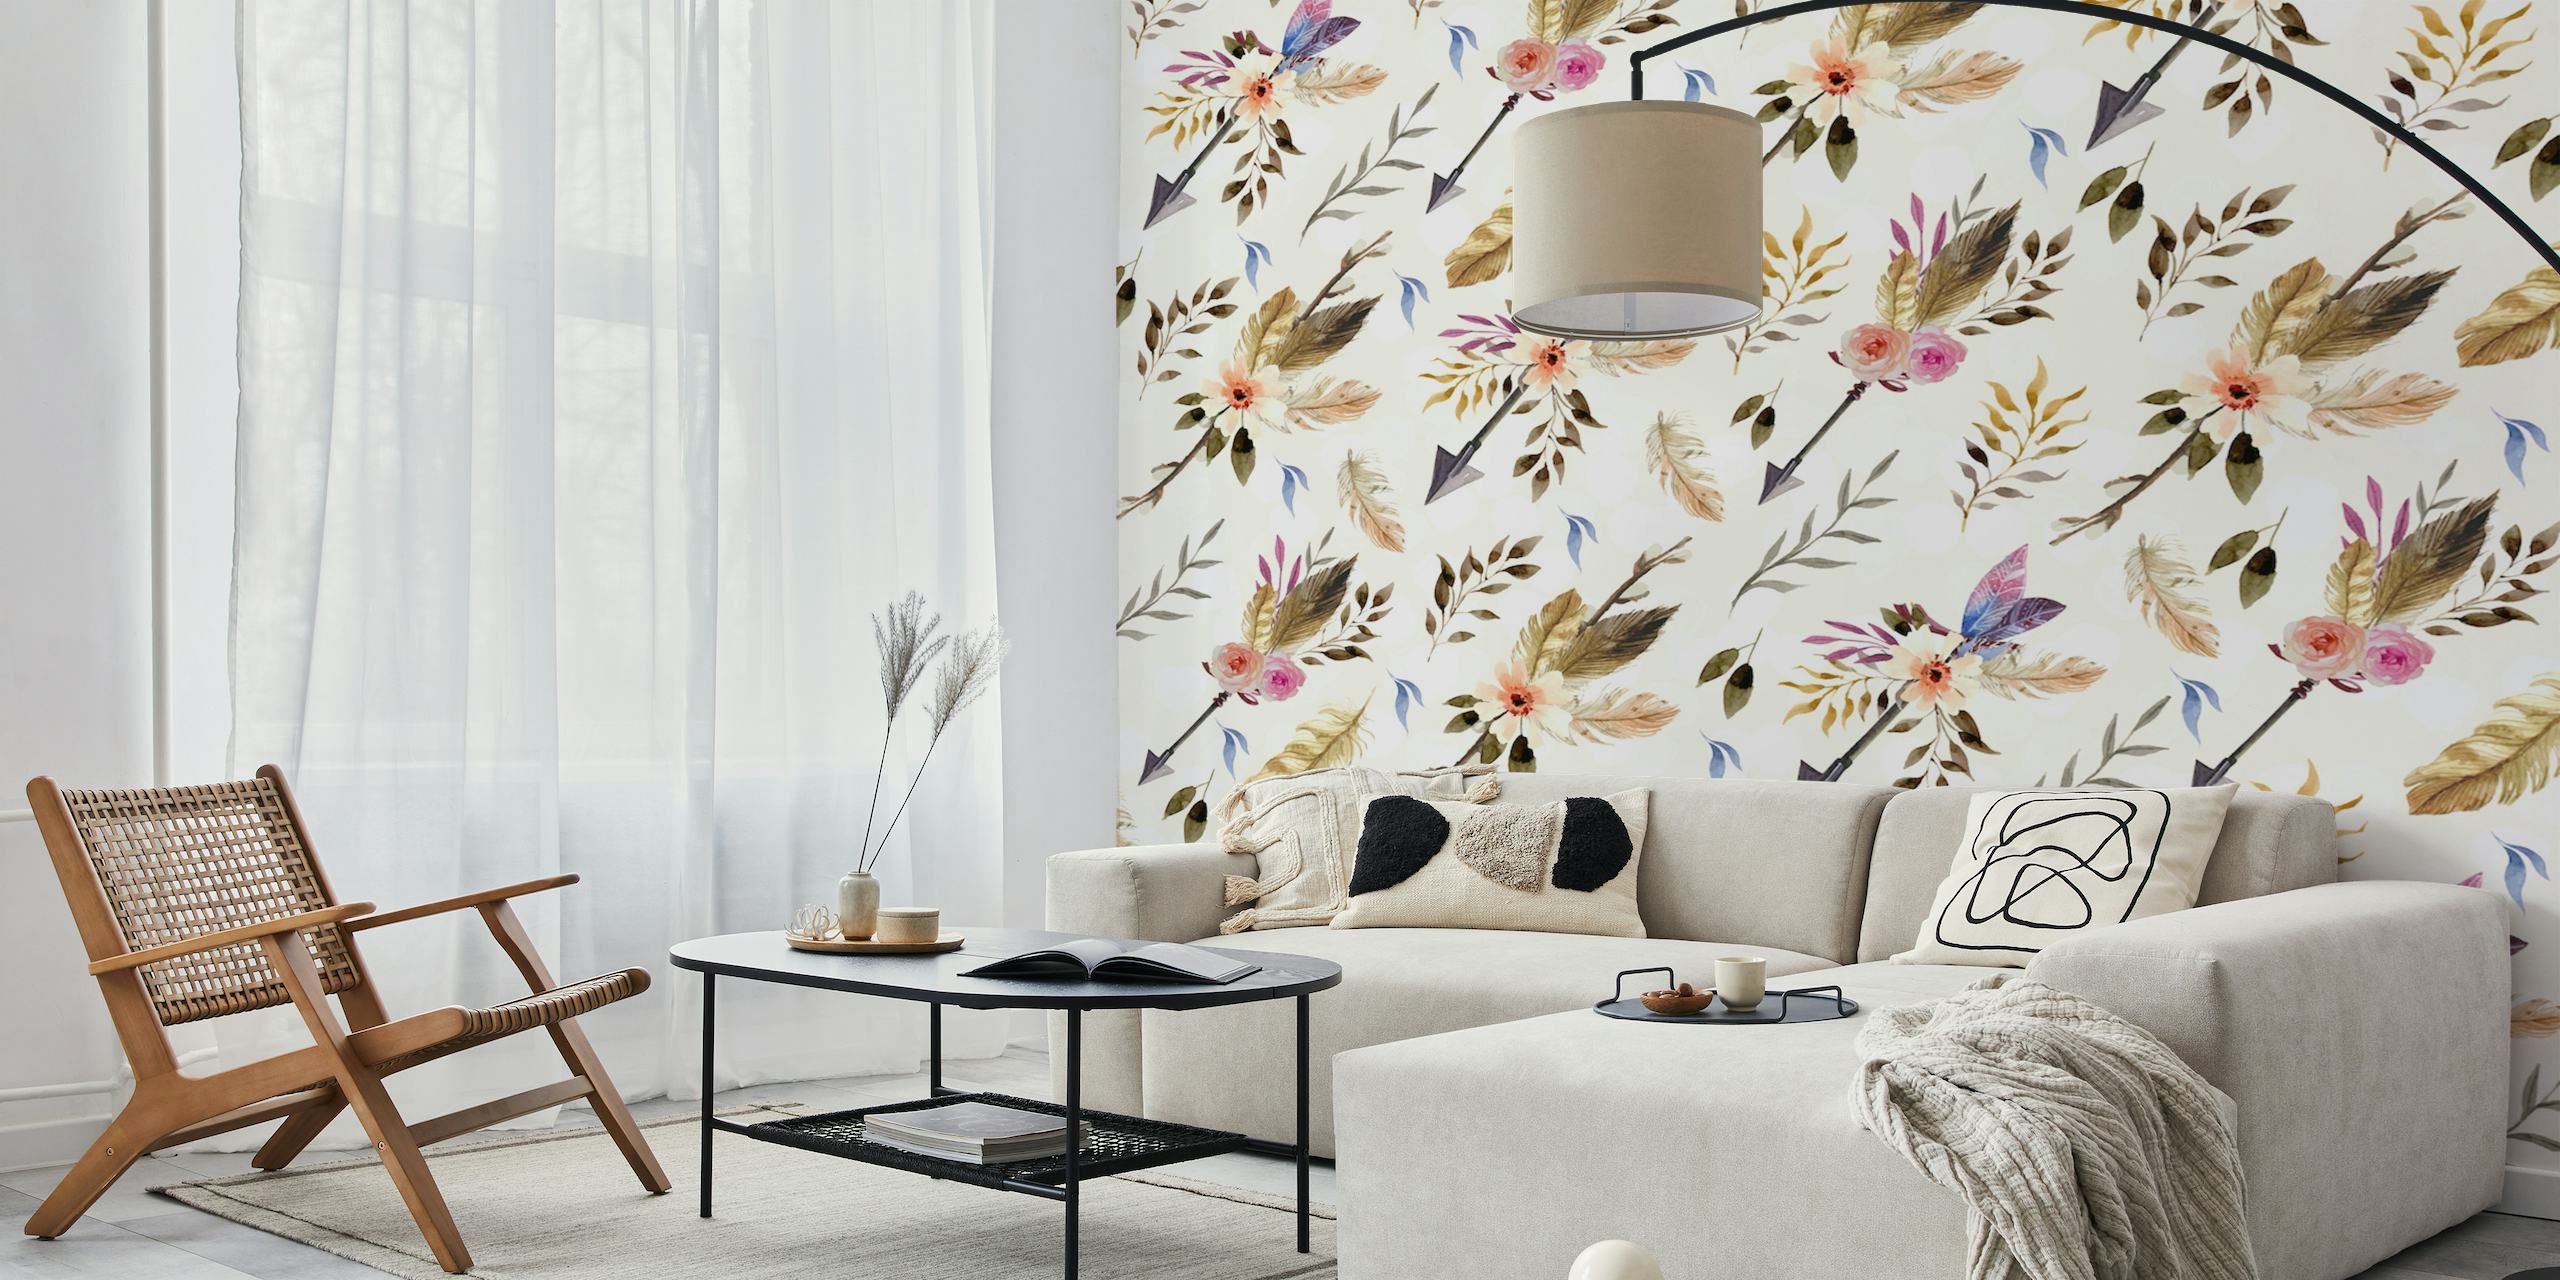 Fotomural vinílico de parede floral em estilo boêmio com cores pastéis suaves e padrões naturais intrincados